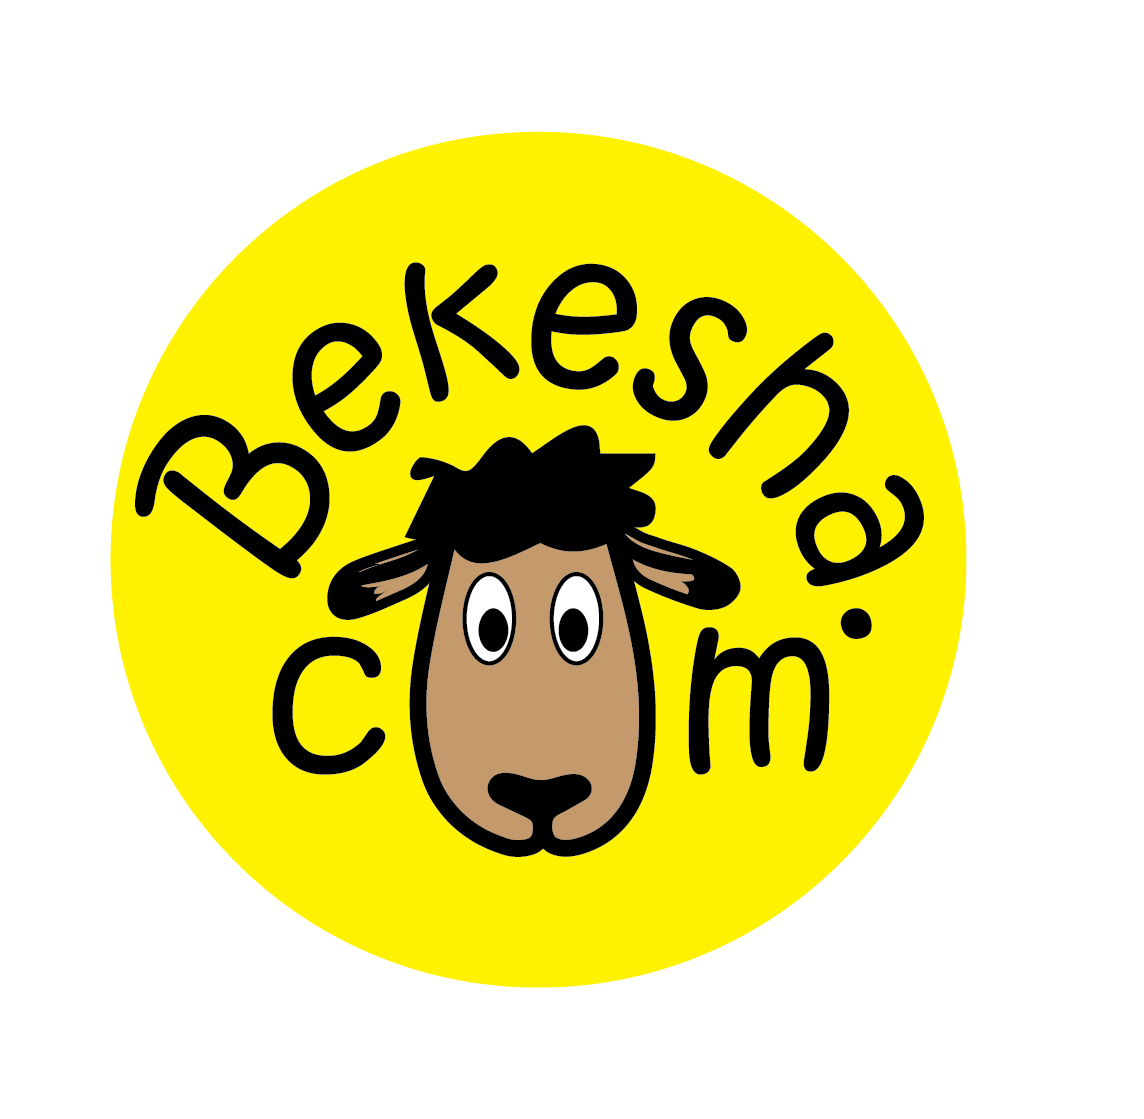 bekesha.com